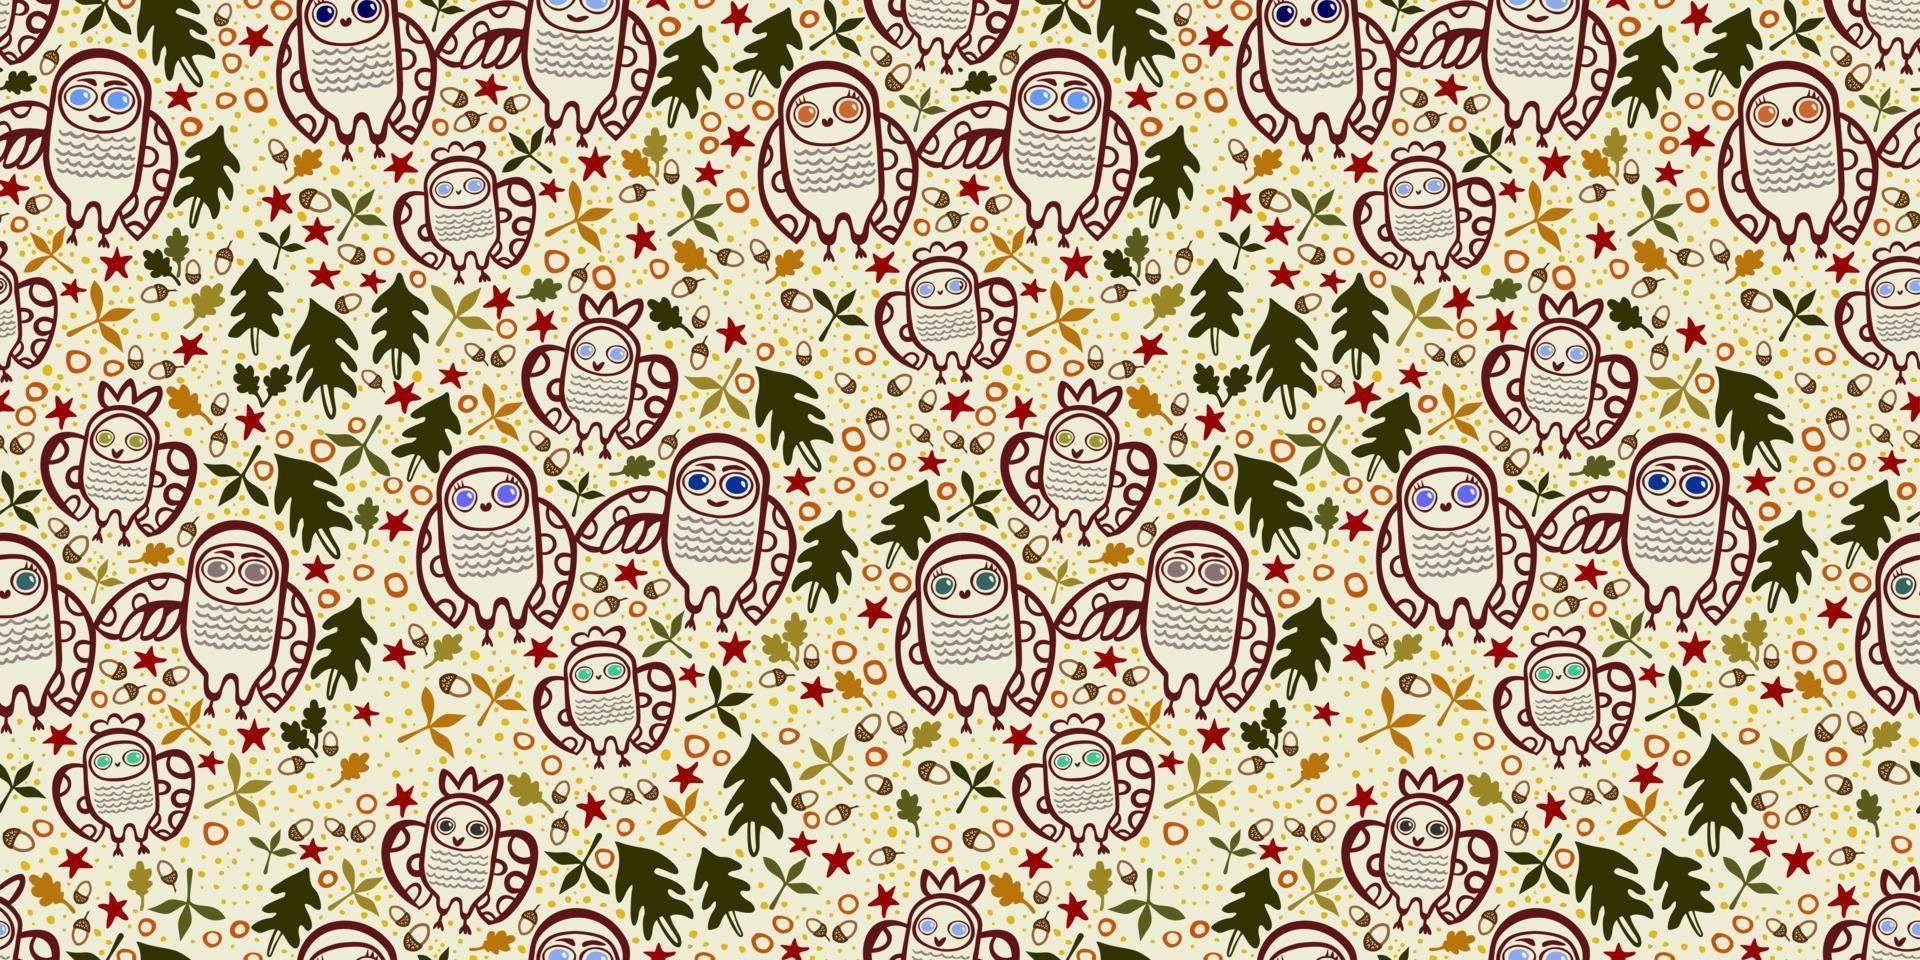 herfst bos. doodle illustratie met uilen. naadloze vector patroon op pastel gele achtergrond.